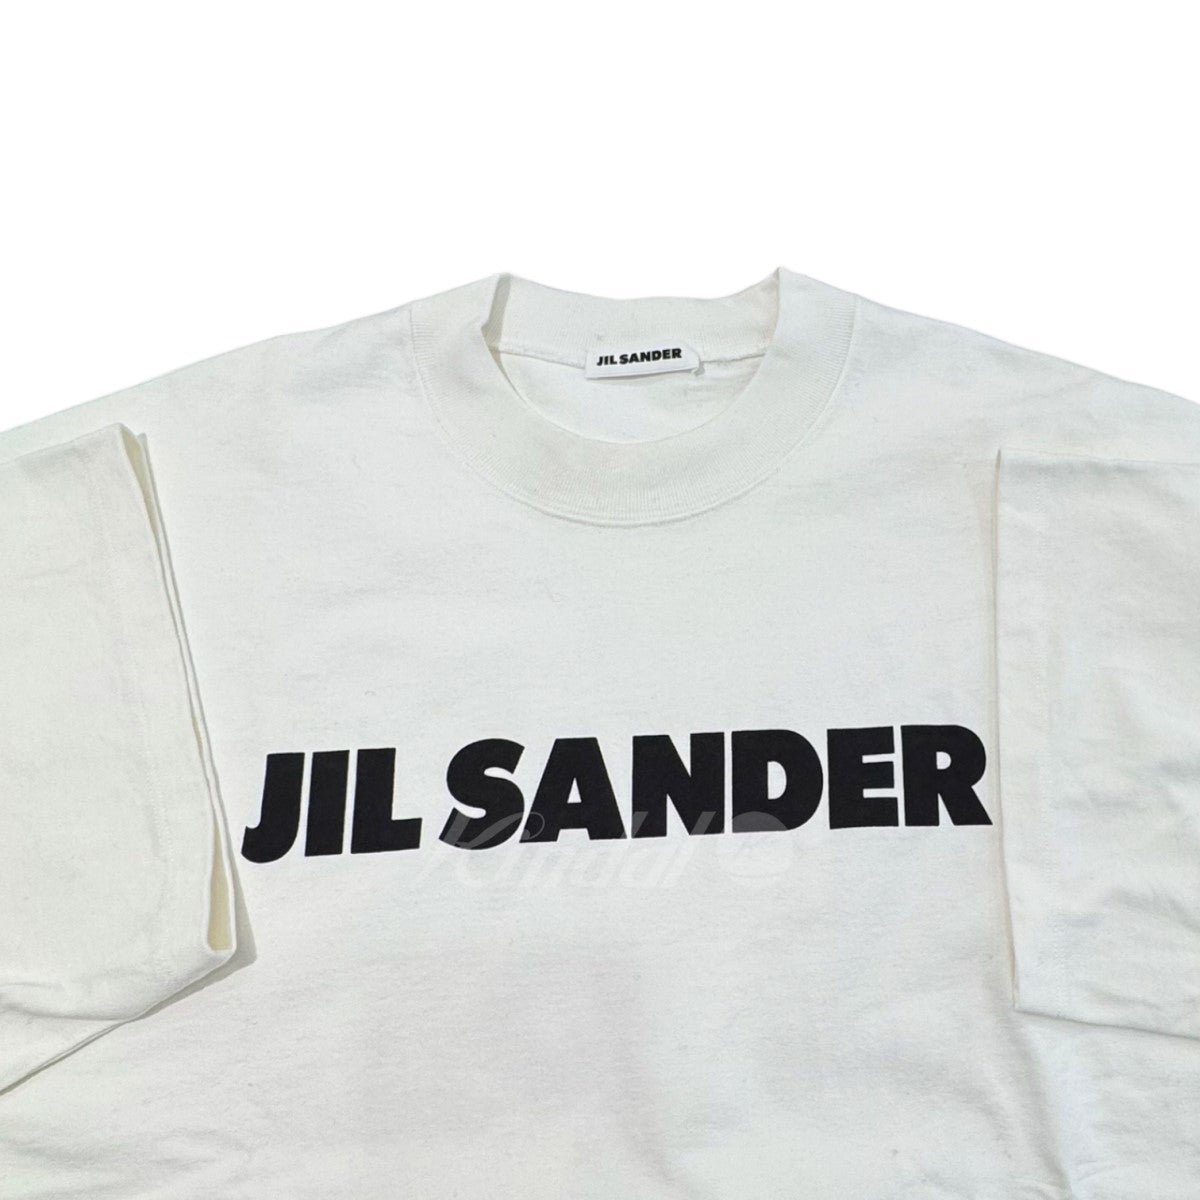 JIL SANDER(ジルサンダー) ロゴプリントTシャツ JSMP707020 ホワイト ...